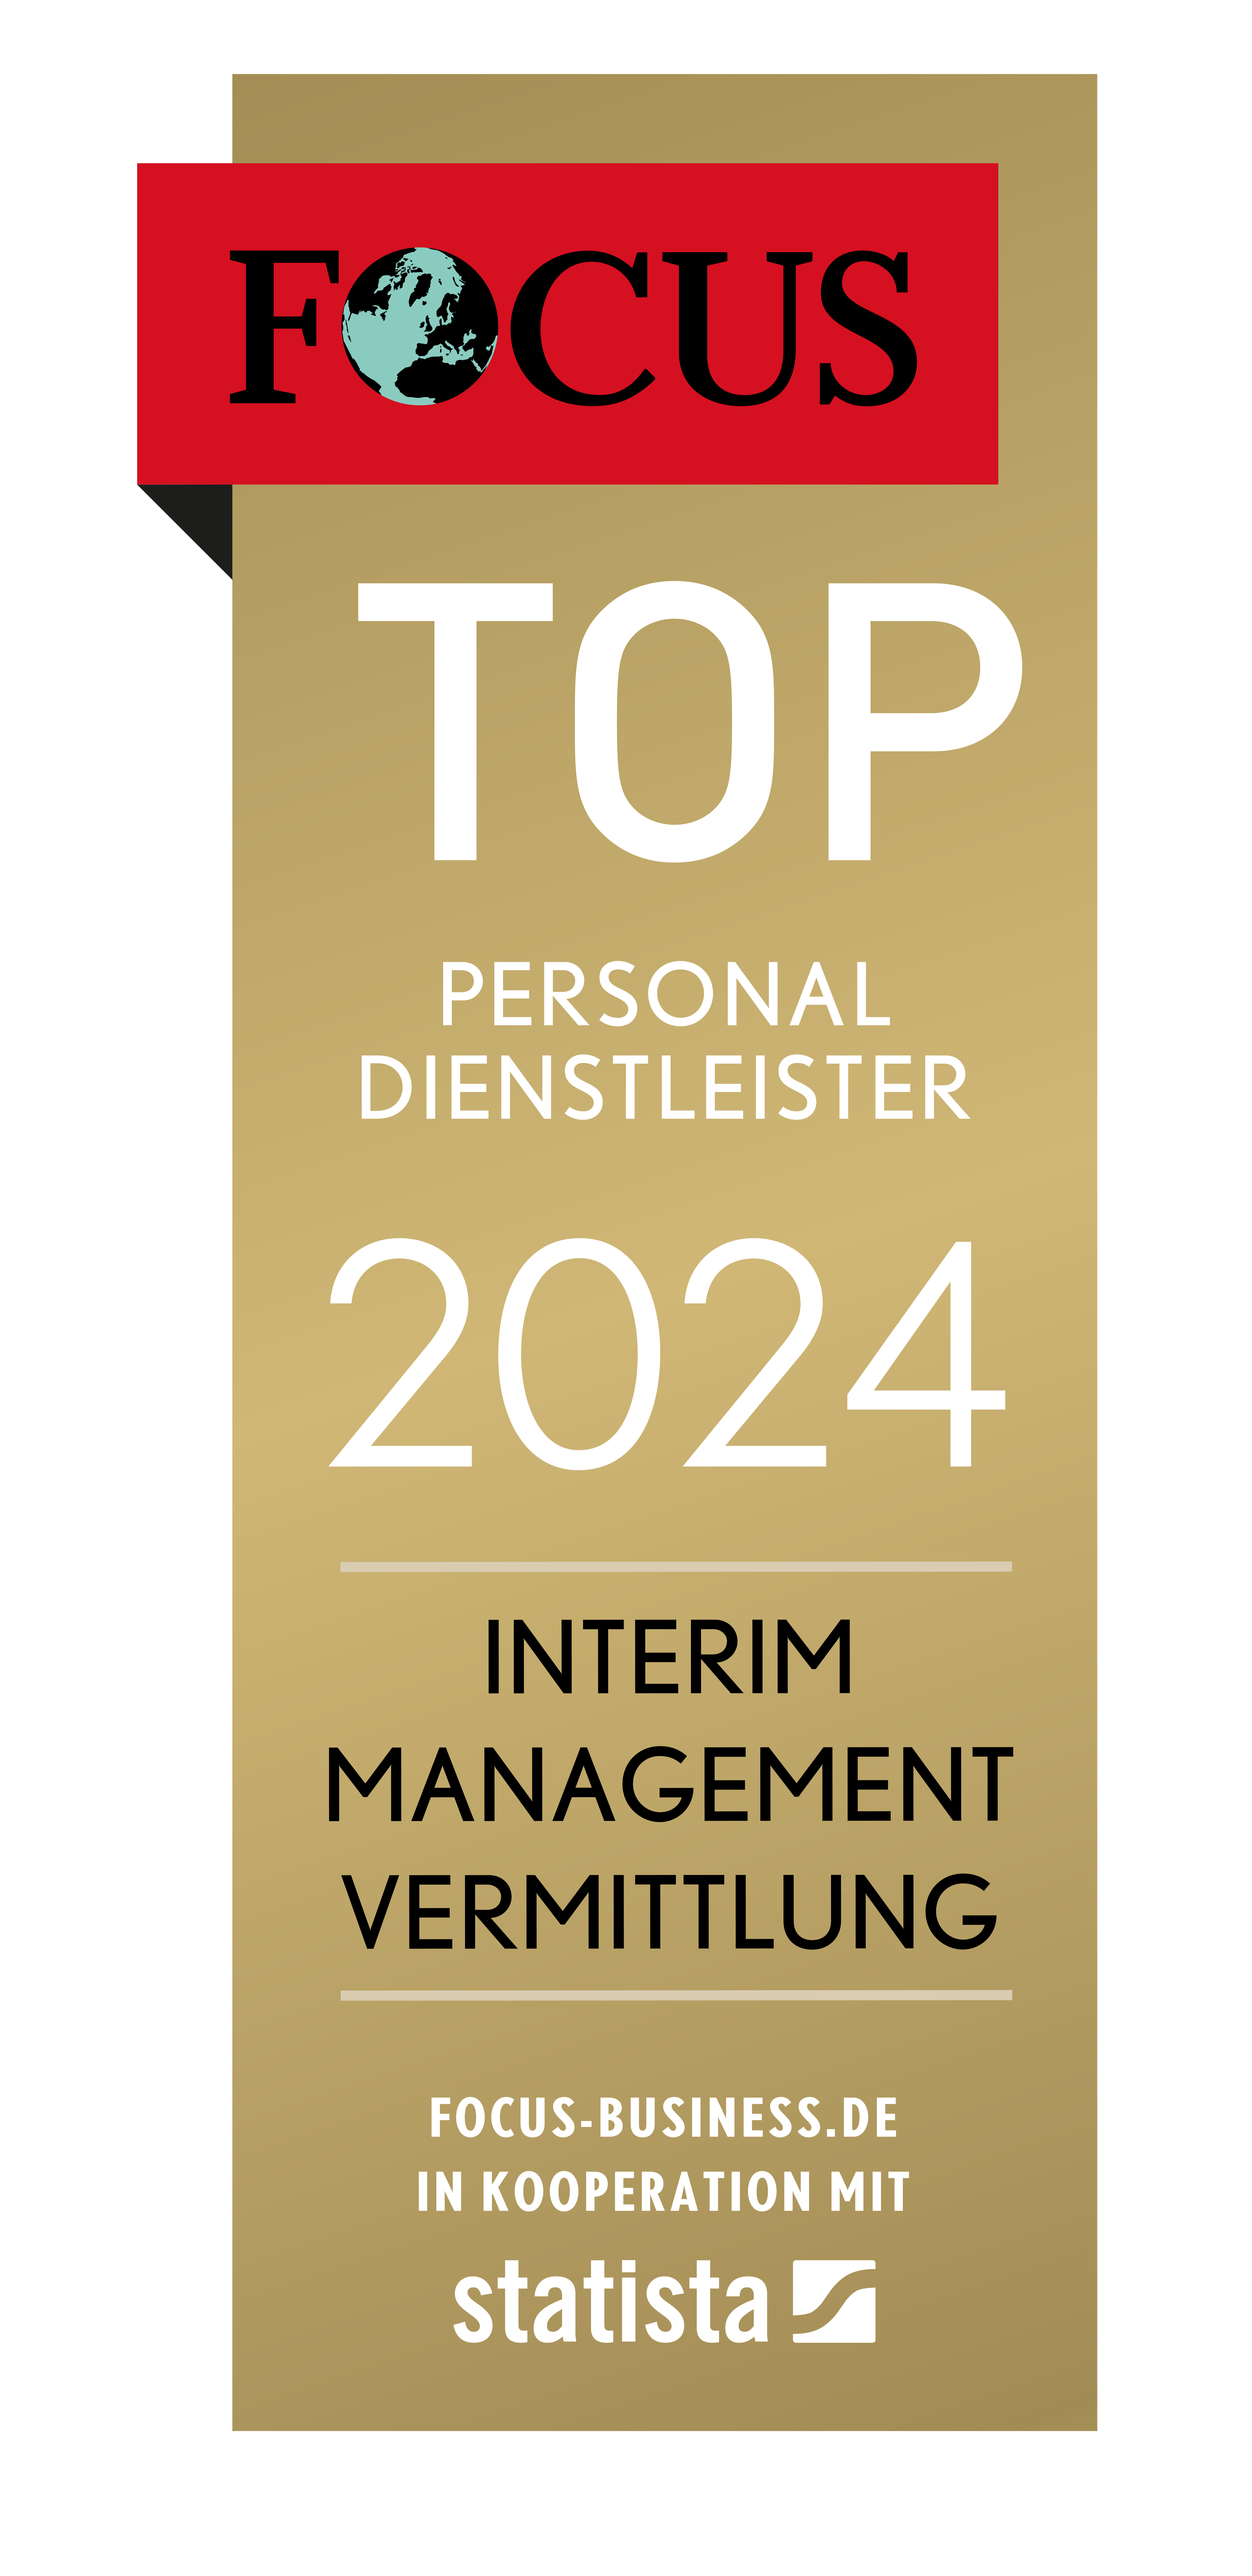 Die Agentur für Interim Manager AIM GmbH wurde von der Zeitschrift Focus-Business und Statista als einer der besten Top-Personaldienstleister bei der Vermittlung im Interim Management ausgezeichnet.